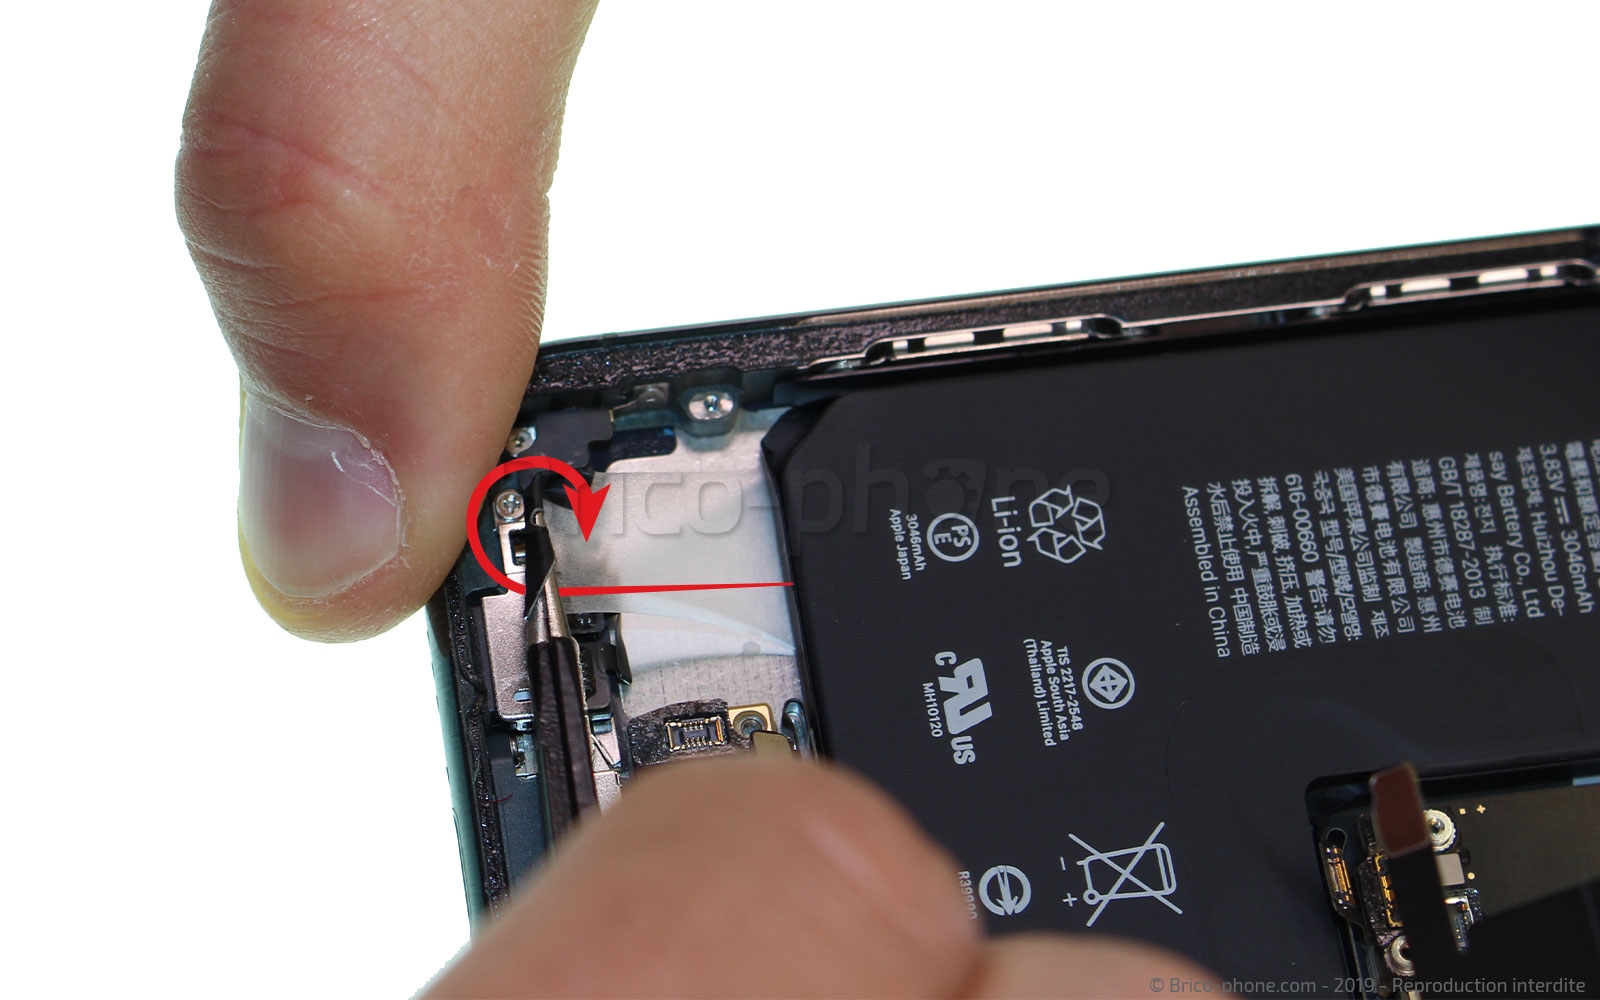 Remplacement Batterie iPhone 11 Pro, Nouvelle Pile iPhone 11 Pro